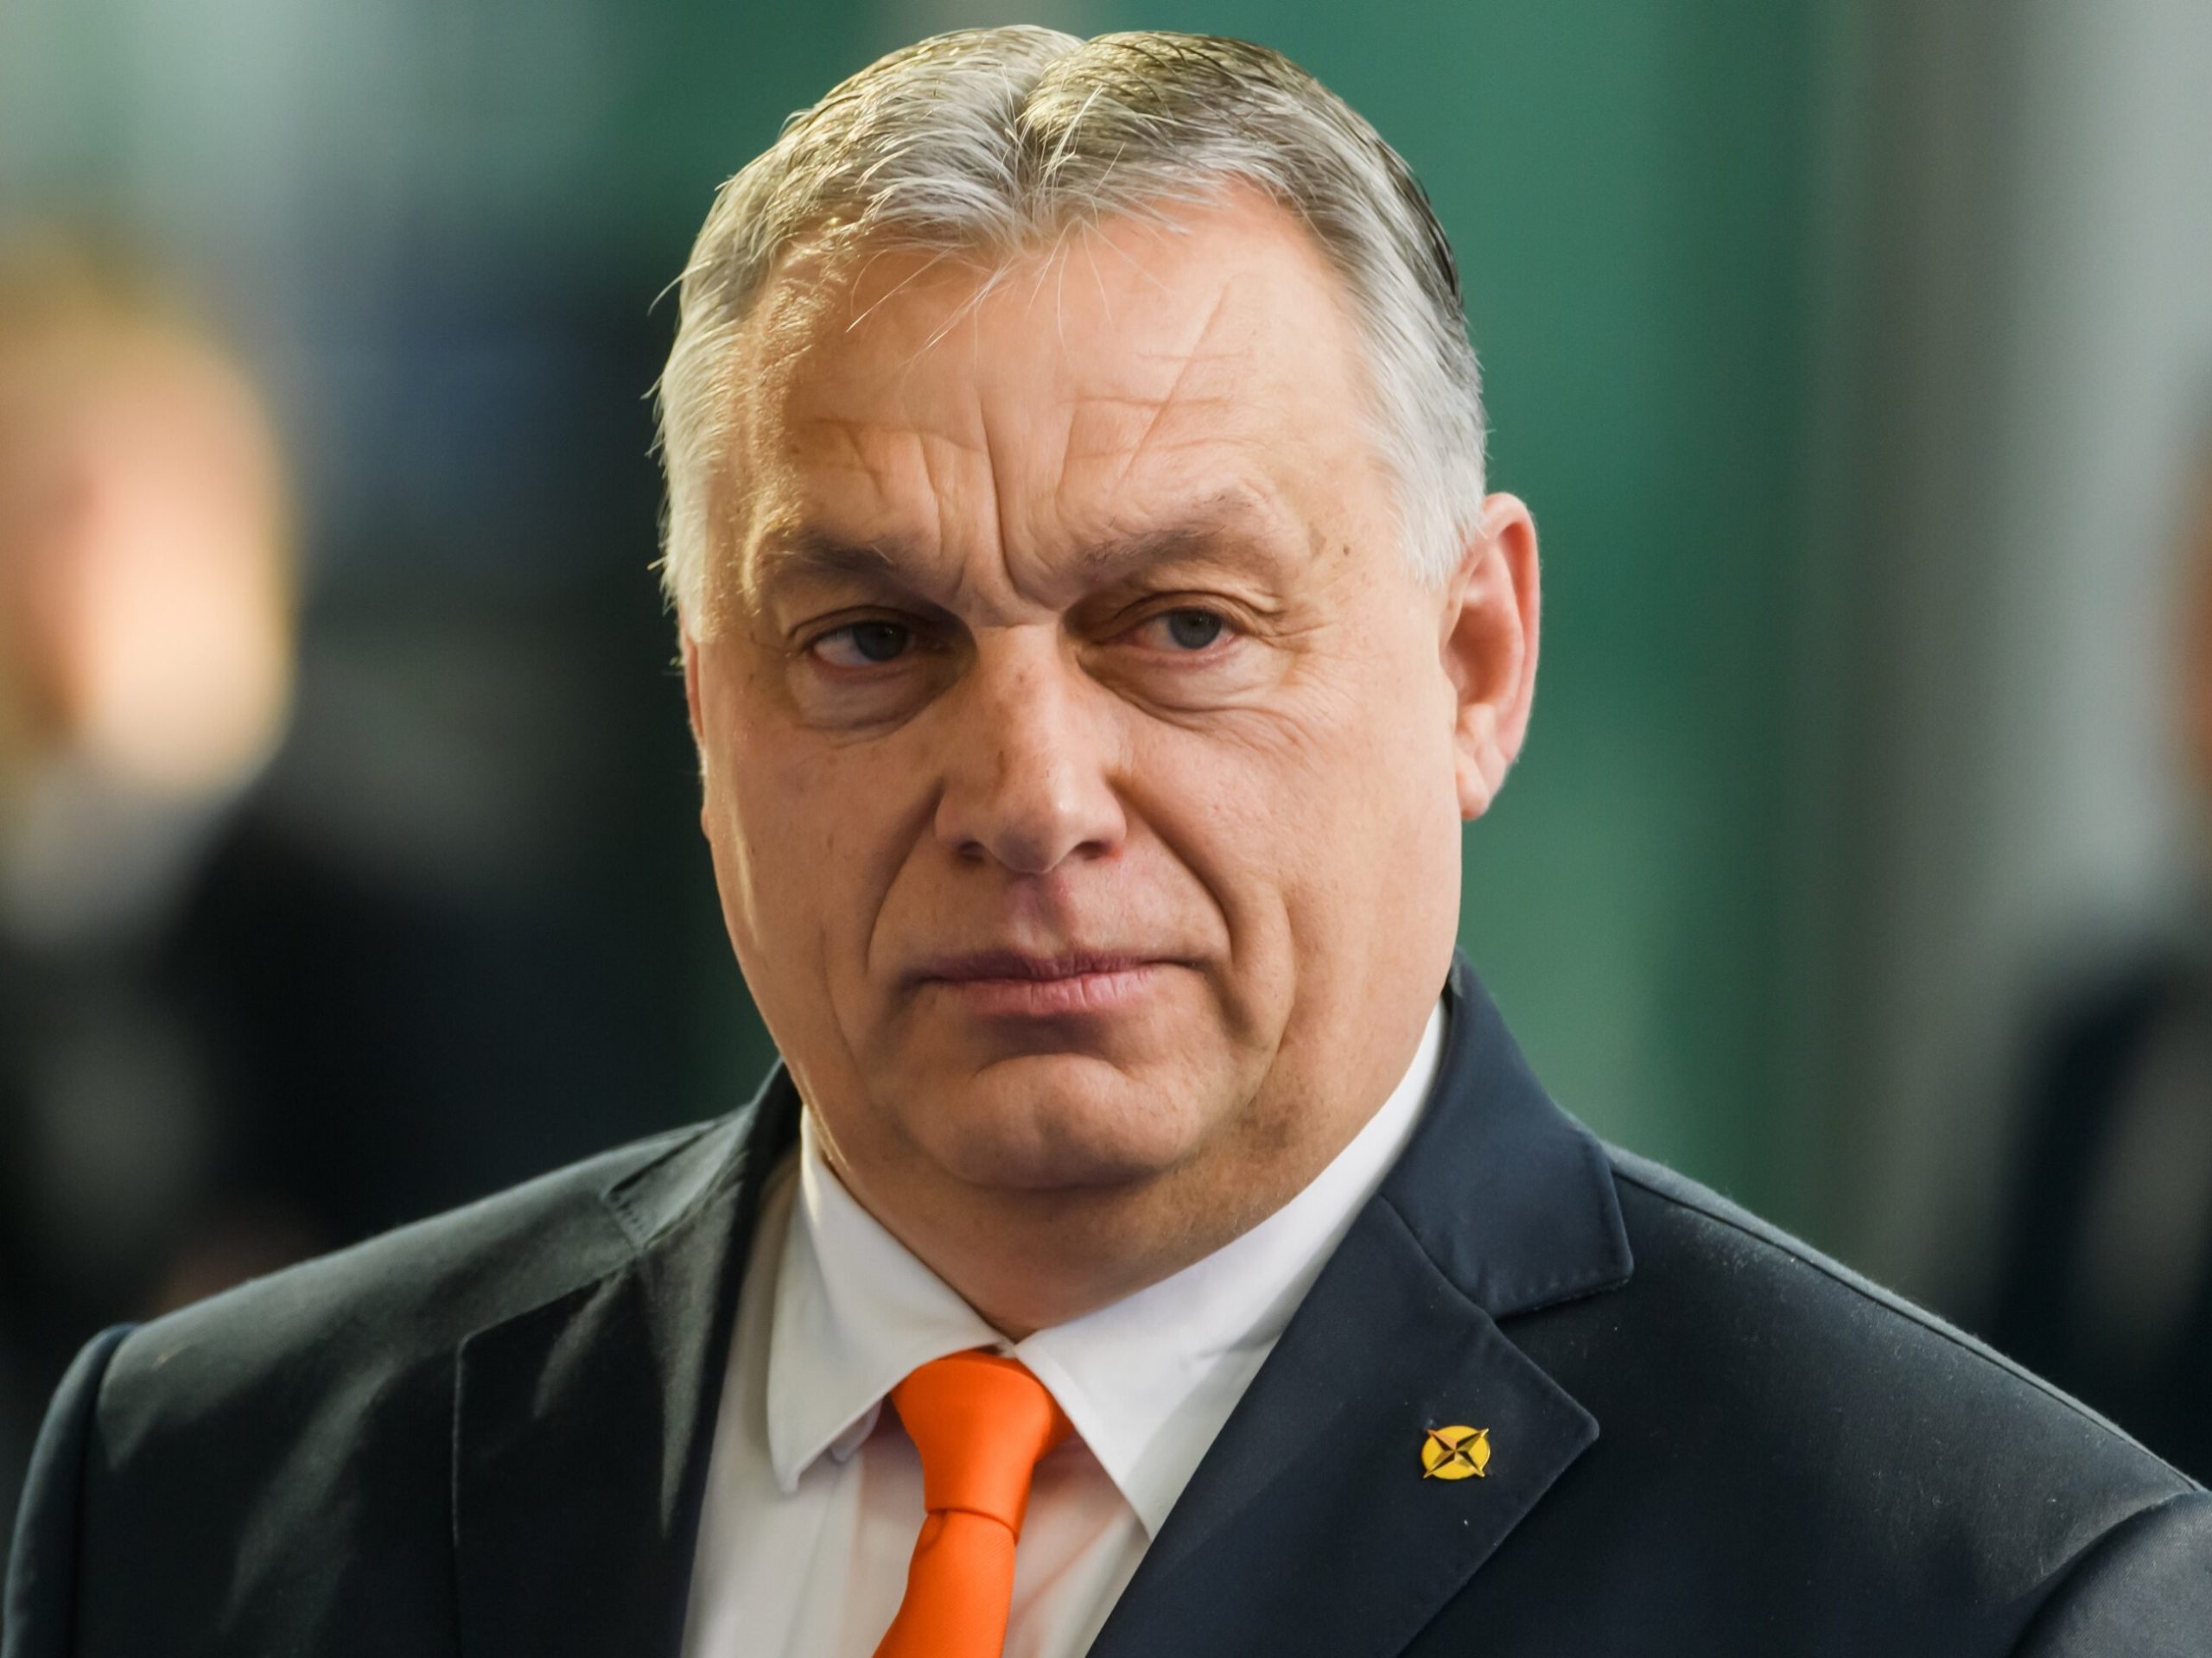 Węgierski rząd apelował o pokój w 29-sekundowym nagraniu. Jedna plansza wywoła wściekłość